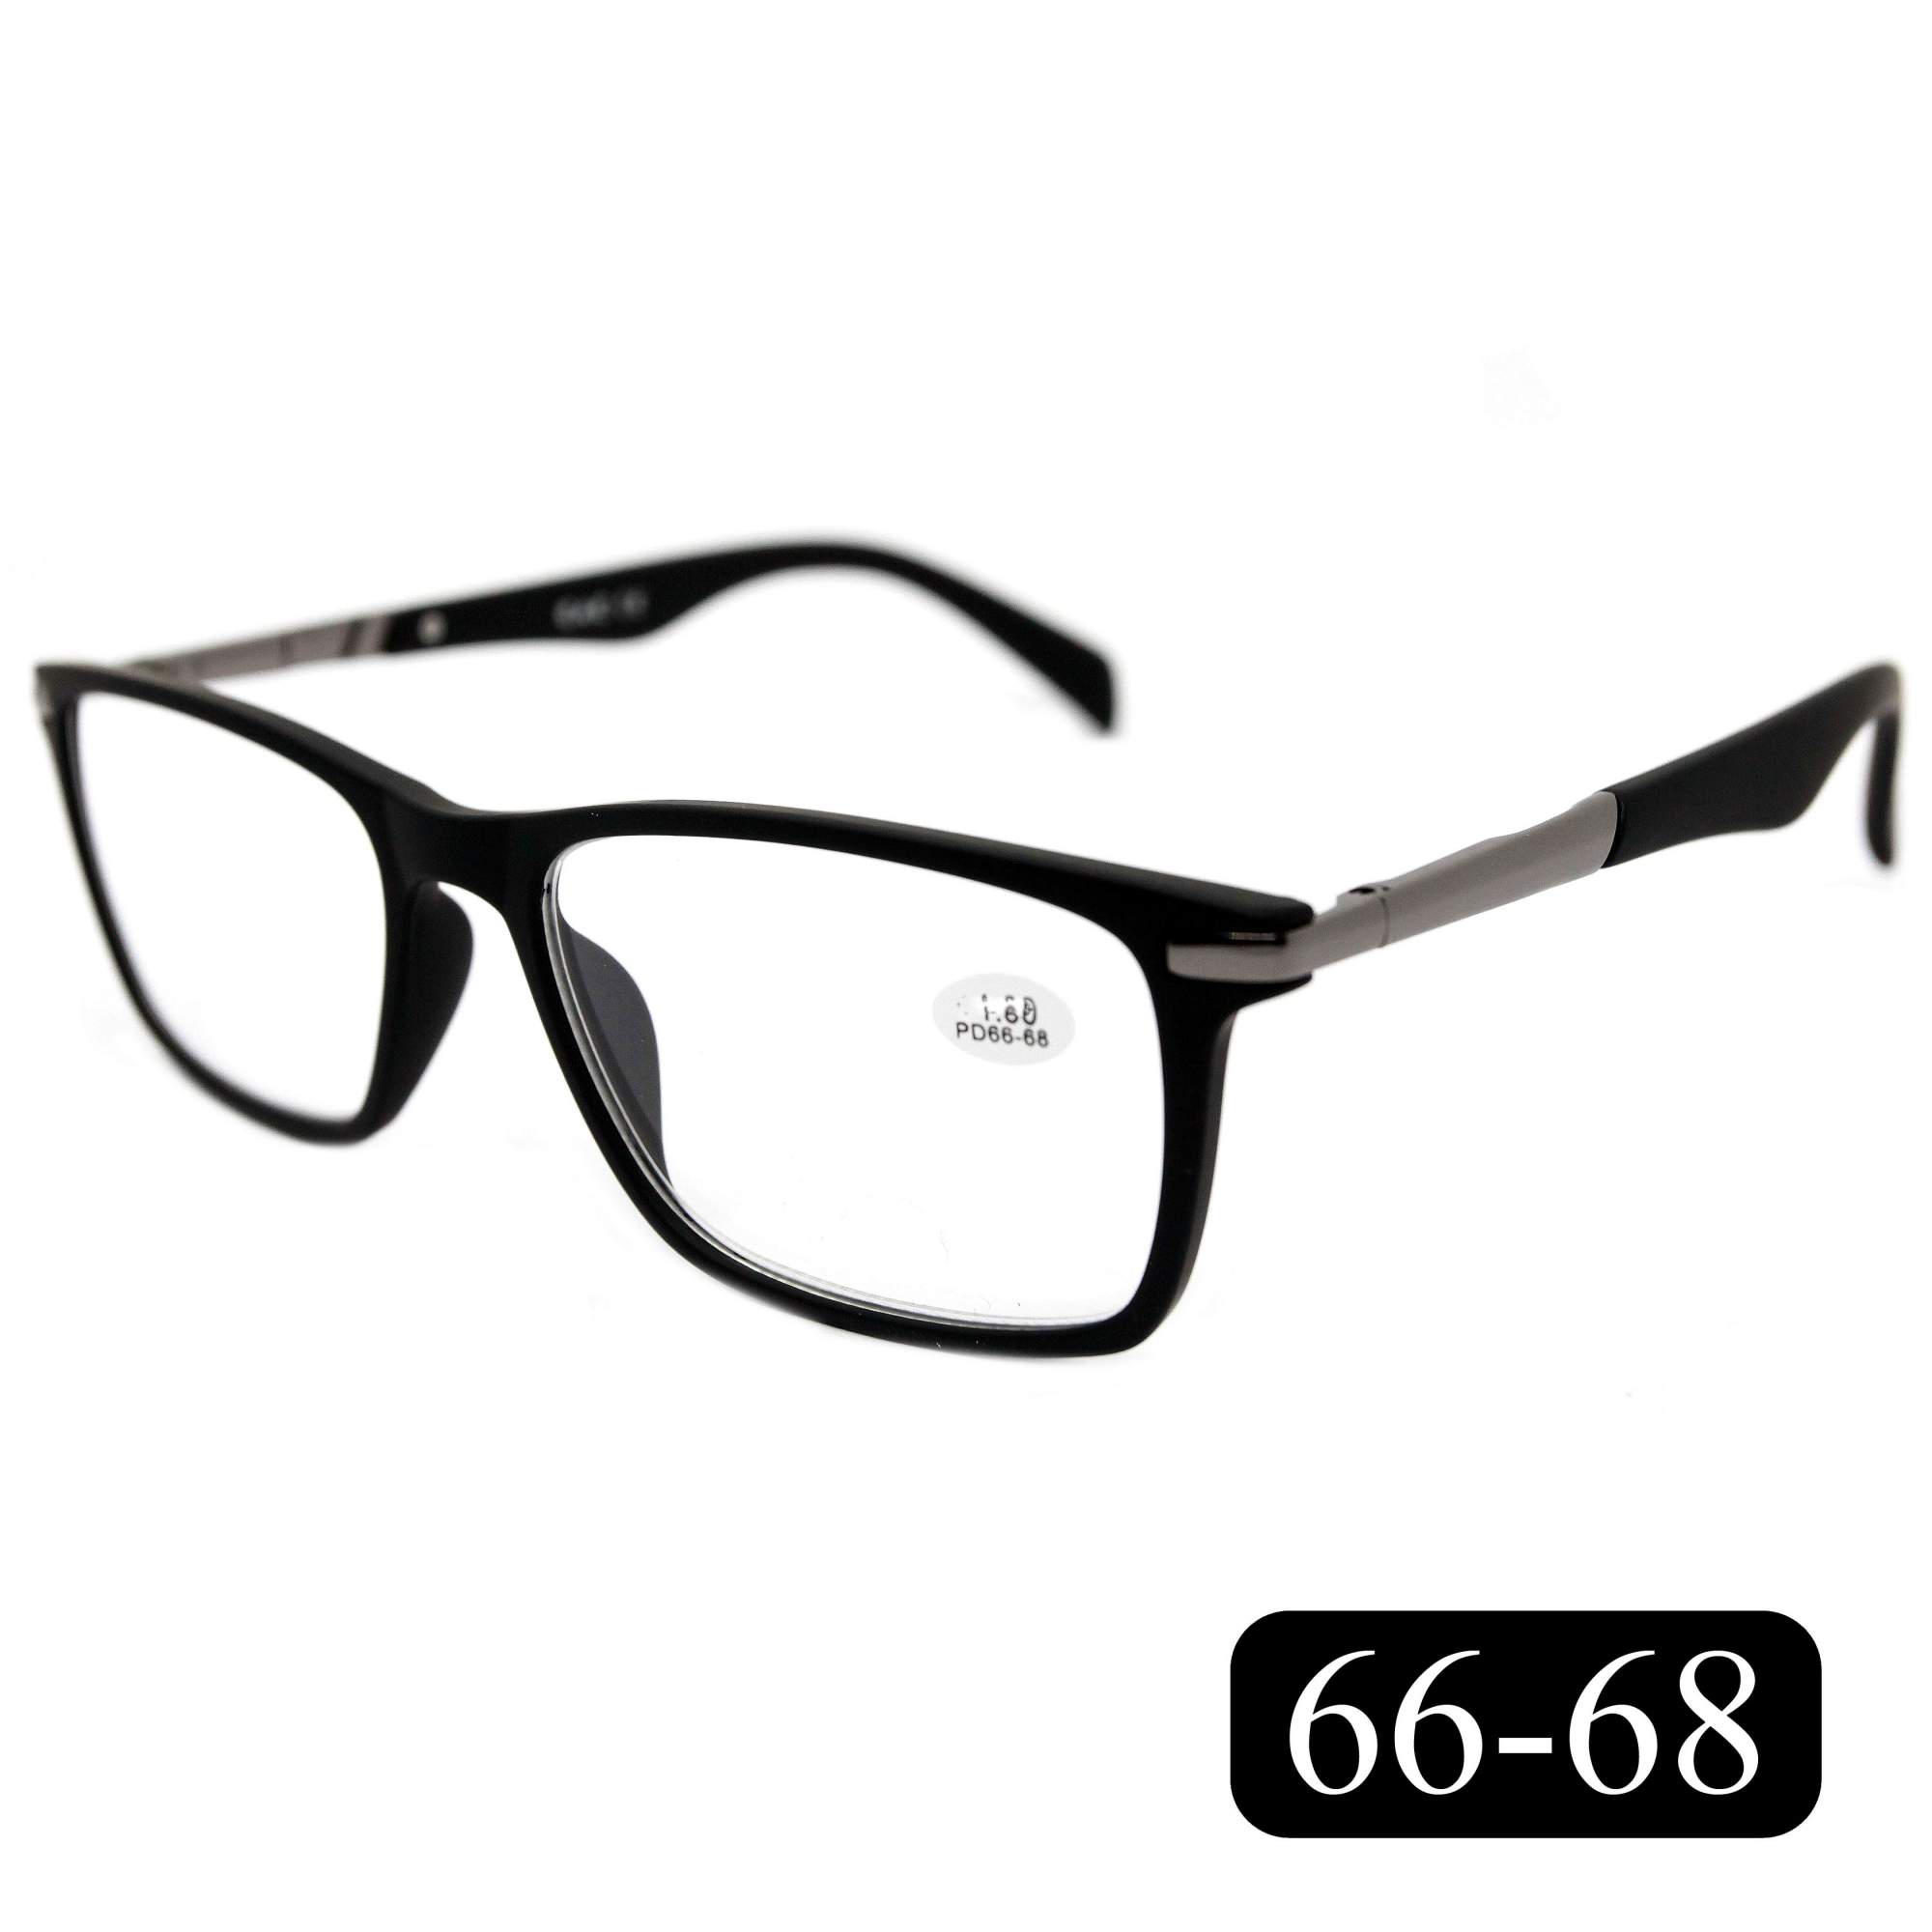 Готовые очки EAE 2177 +4.00, без футляра, цвет черный, РЦ 66-68